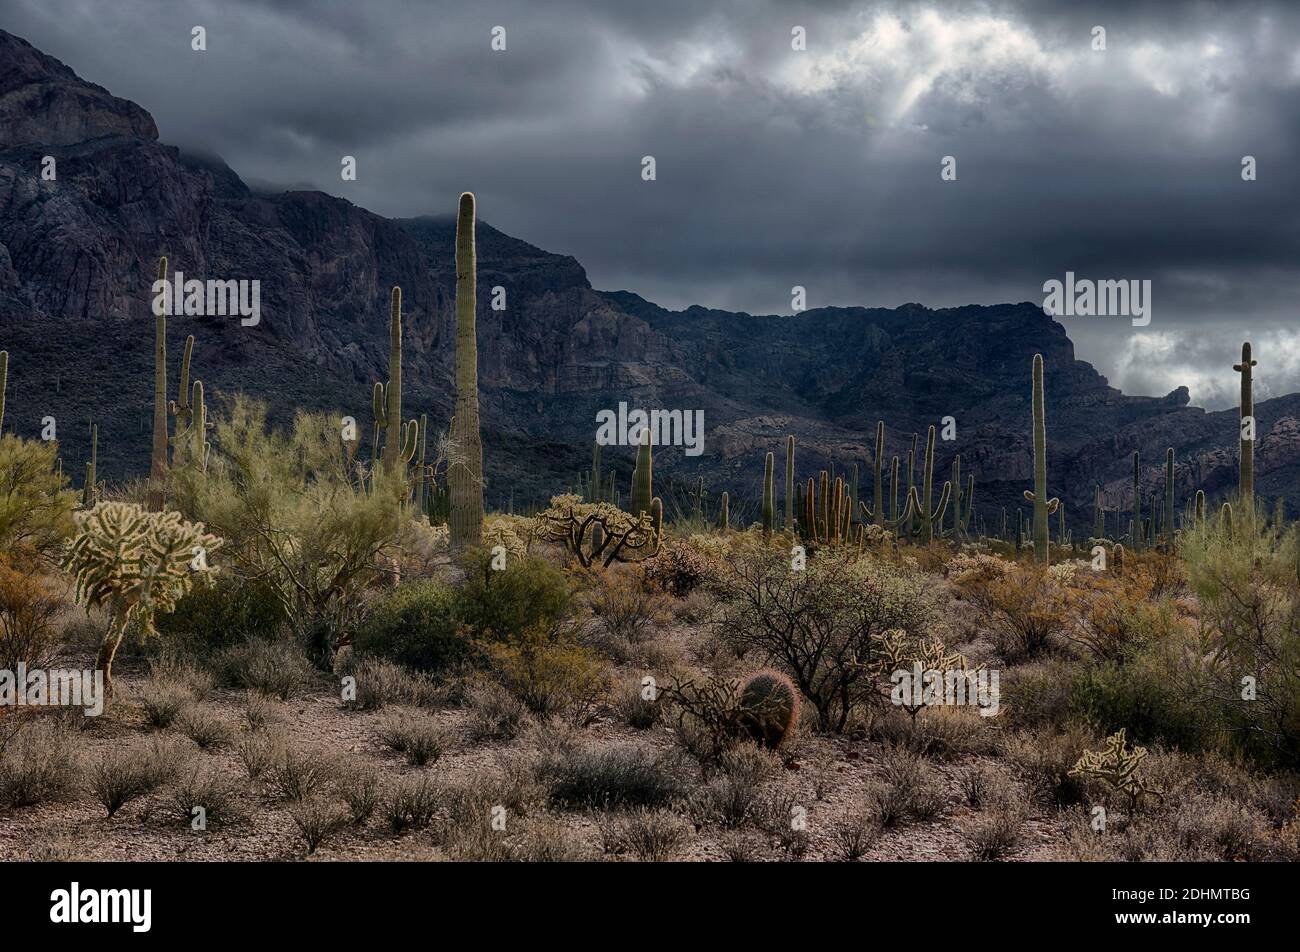 Paysage désertique rétroéclairé avec de nombreuses espèces de cactus dans le monument national de Organ Pipe Cactus, dans le sud de l'Arizona. Banque D'Images